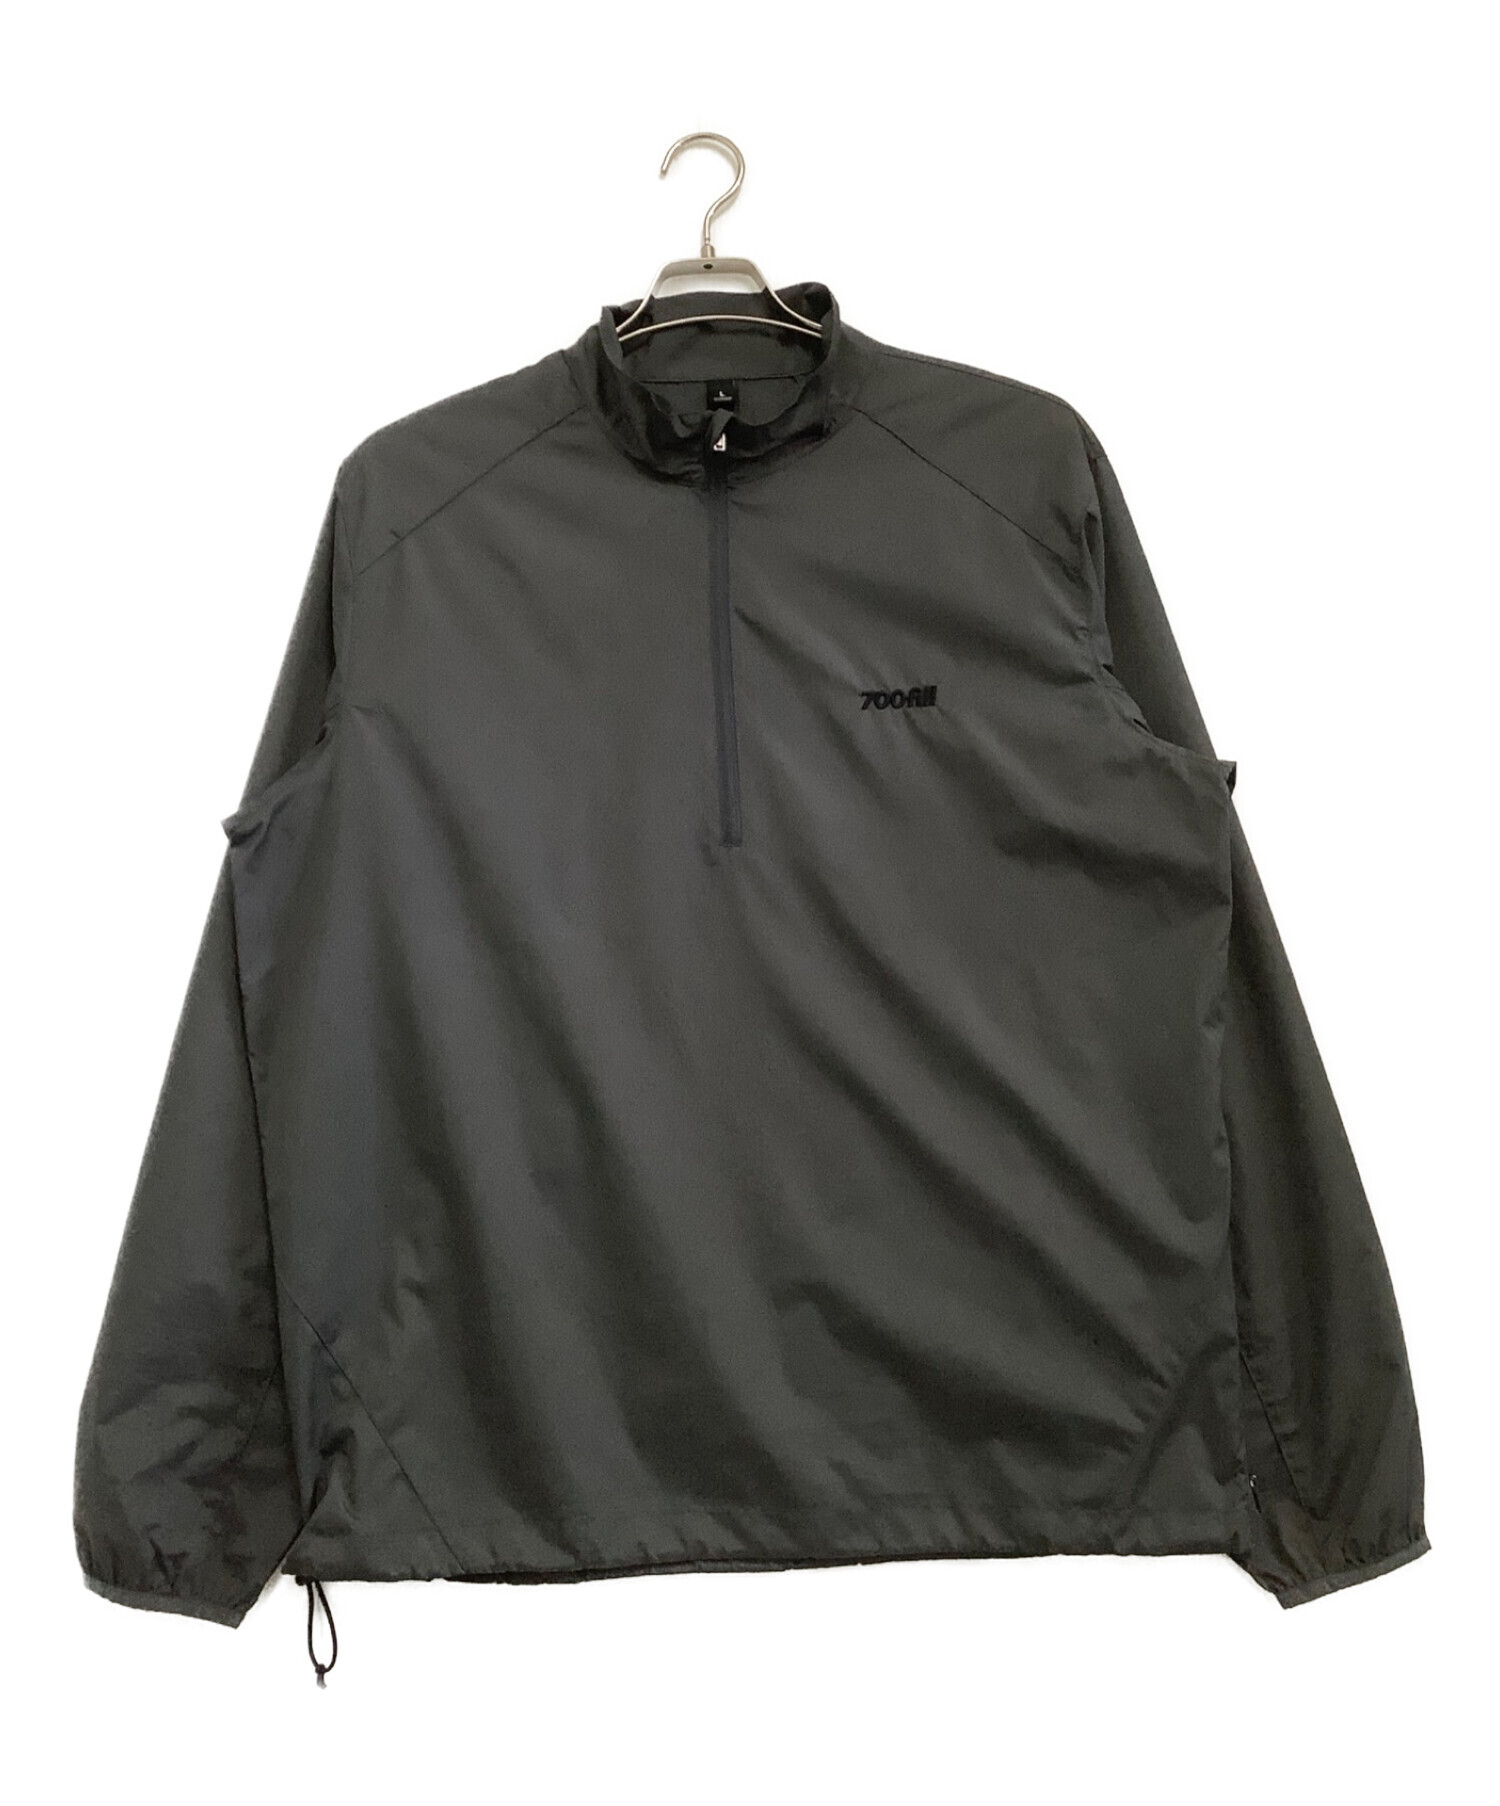 700FILL (ナナヒャクフィル) ナイロンハーフジップジャケット グレー サイズ:L